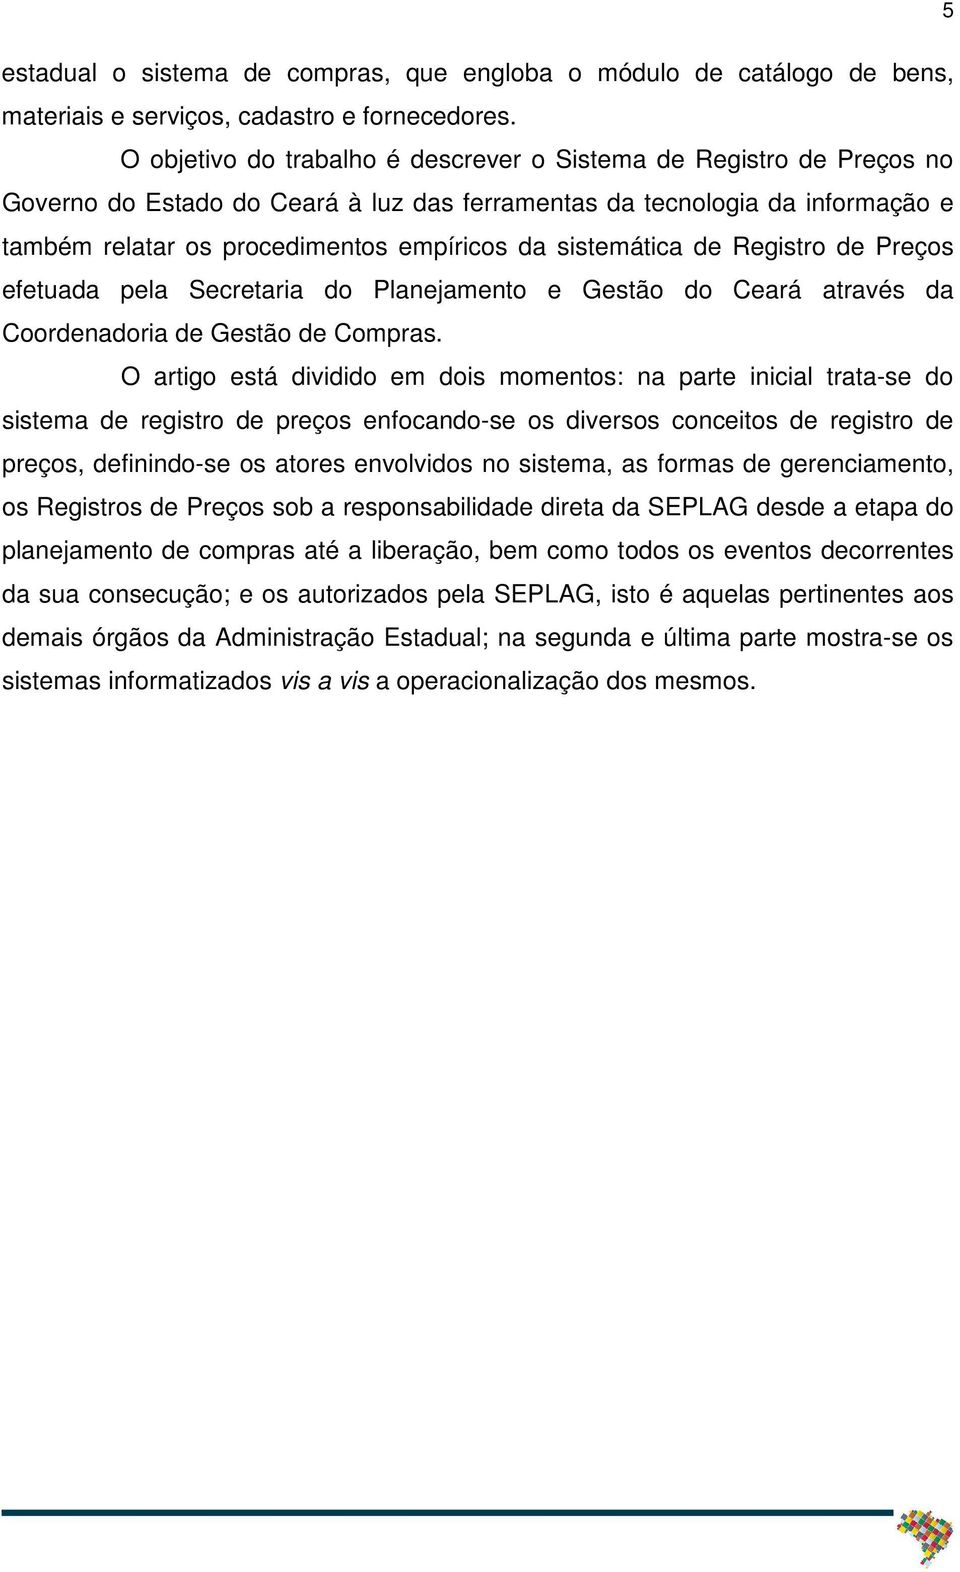 sistemática de Registro de Preços efetuada pela Secretaria do Planejamento e Gestão do Ceará através da Coordenadoria de Gestão de Compras.